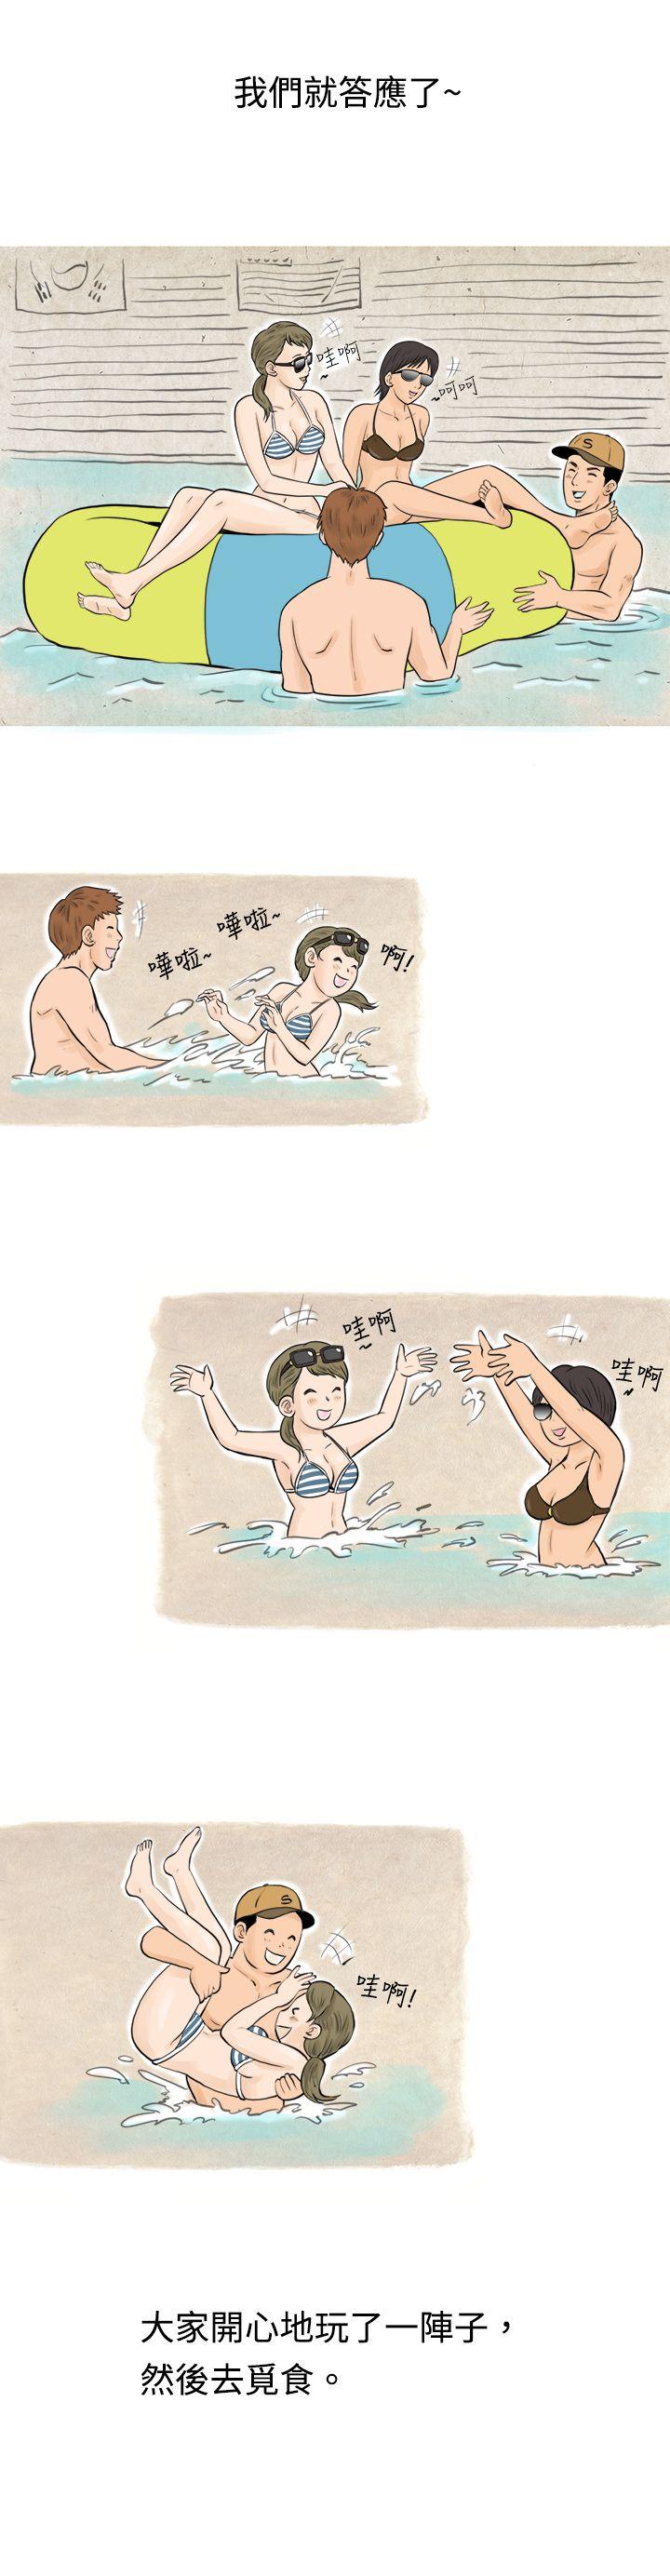 秘密Story  在梨泰院游泳池中的小故事(上) 漫画图片7.jpg